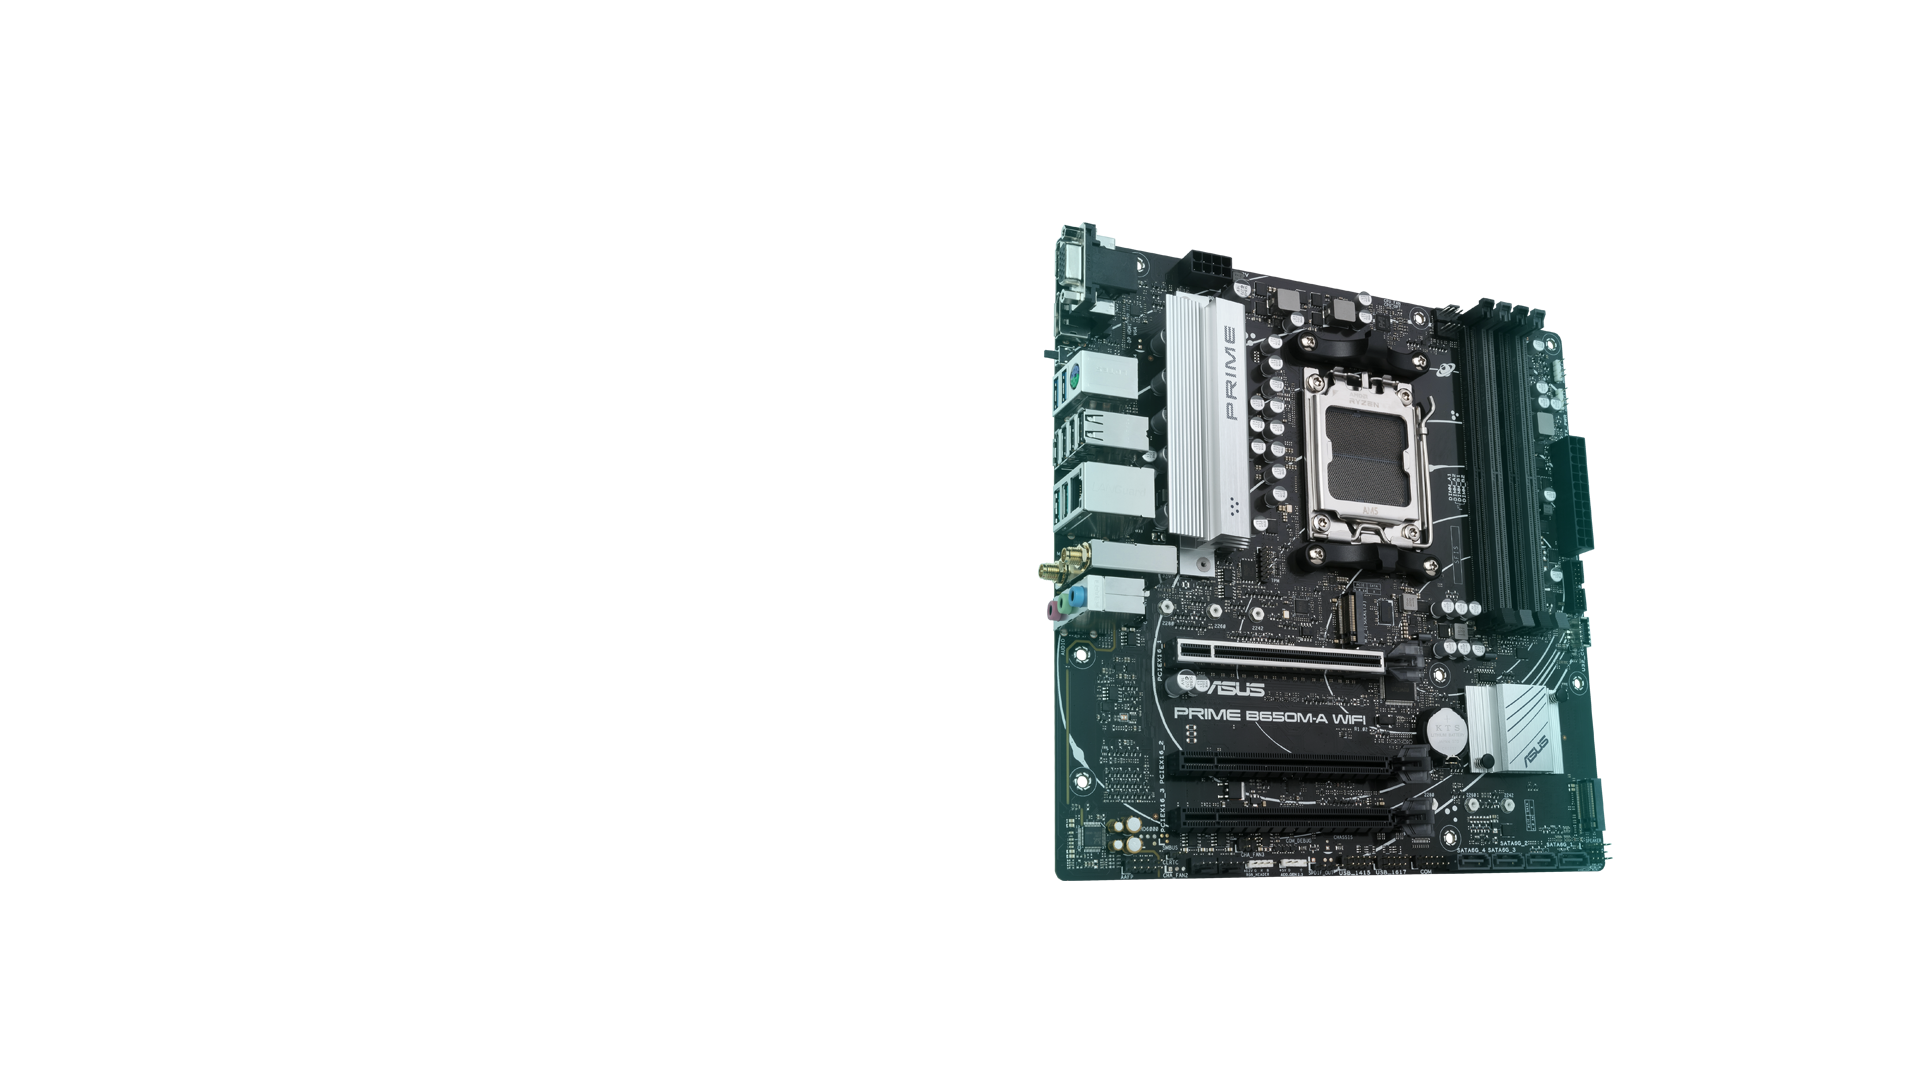 PRIME B650M-A WIFI-CSM mang đến cho người dùng và các chuyên gia kĩ thuật lắp ráp PC DIY một loạt các tùy chọn điều chỉnh hiệu năng thông qua các tính năng phần mềm và firmware trực quan.